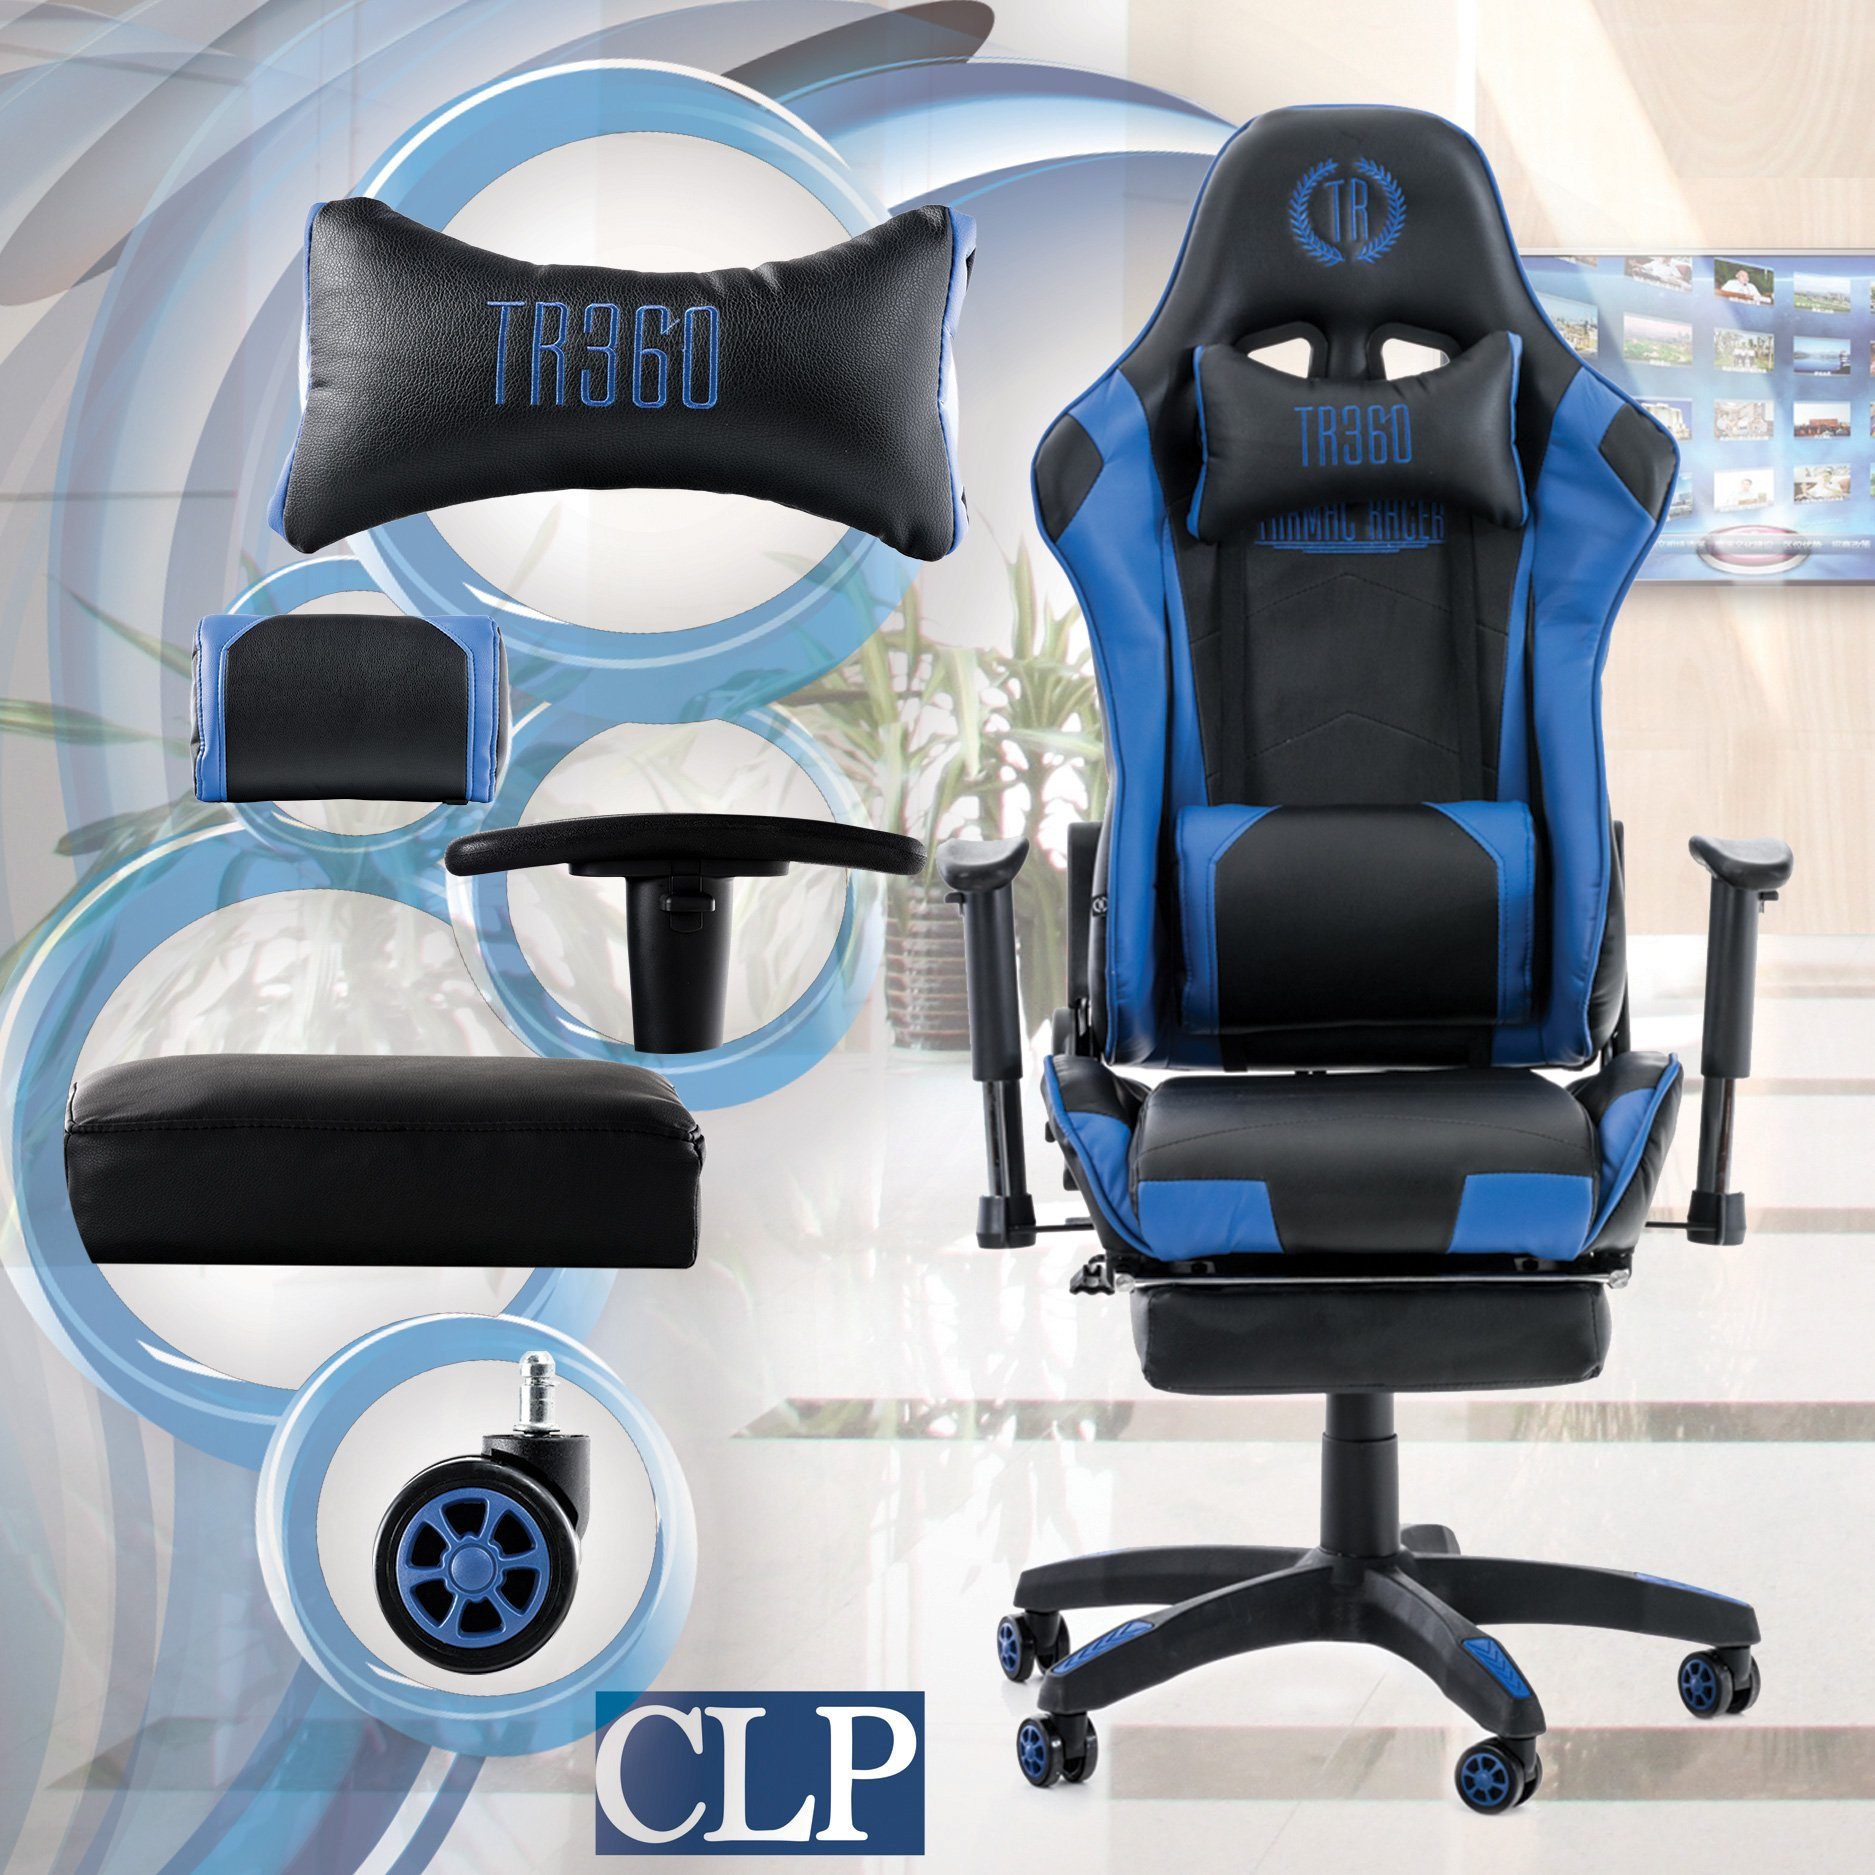 Höhenverstellbar Gaming mit CLP Fußablage, Chair und drehbar Turbo